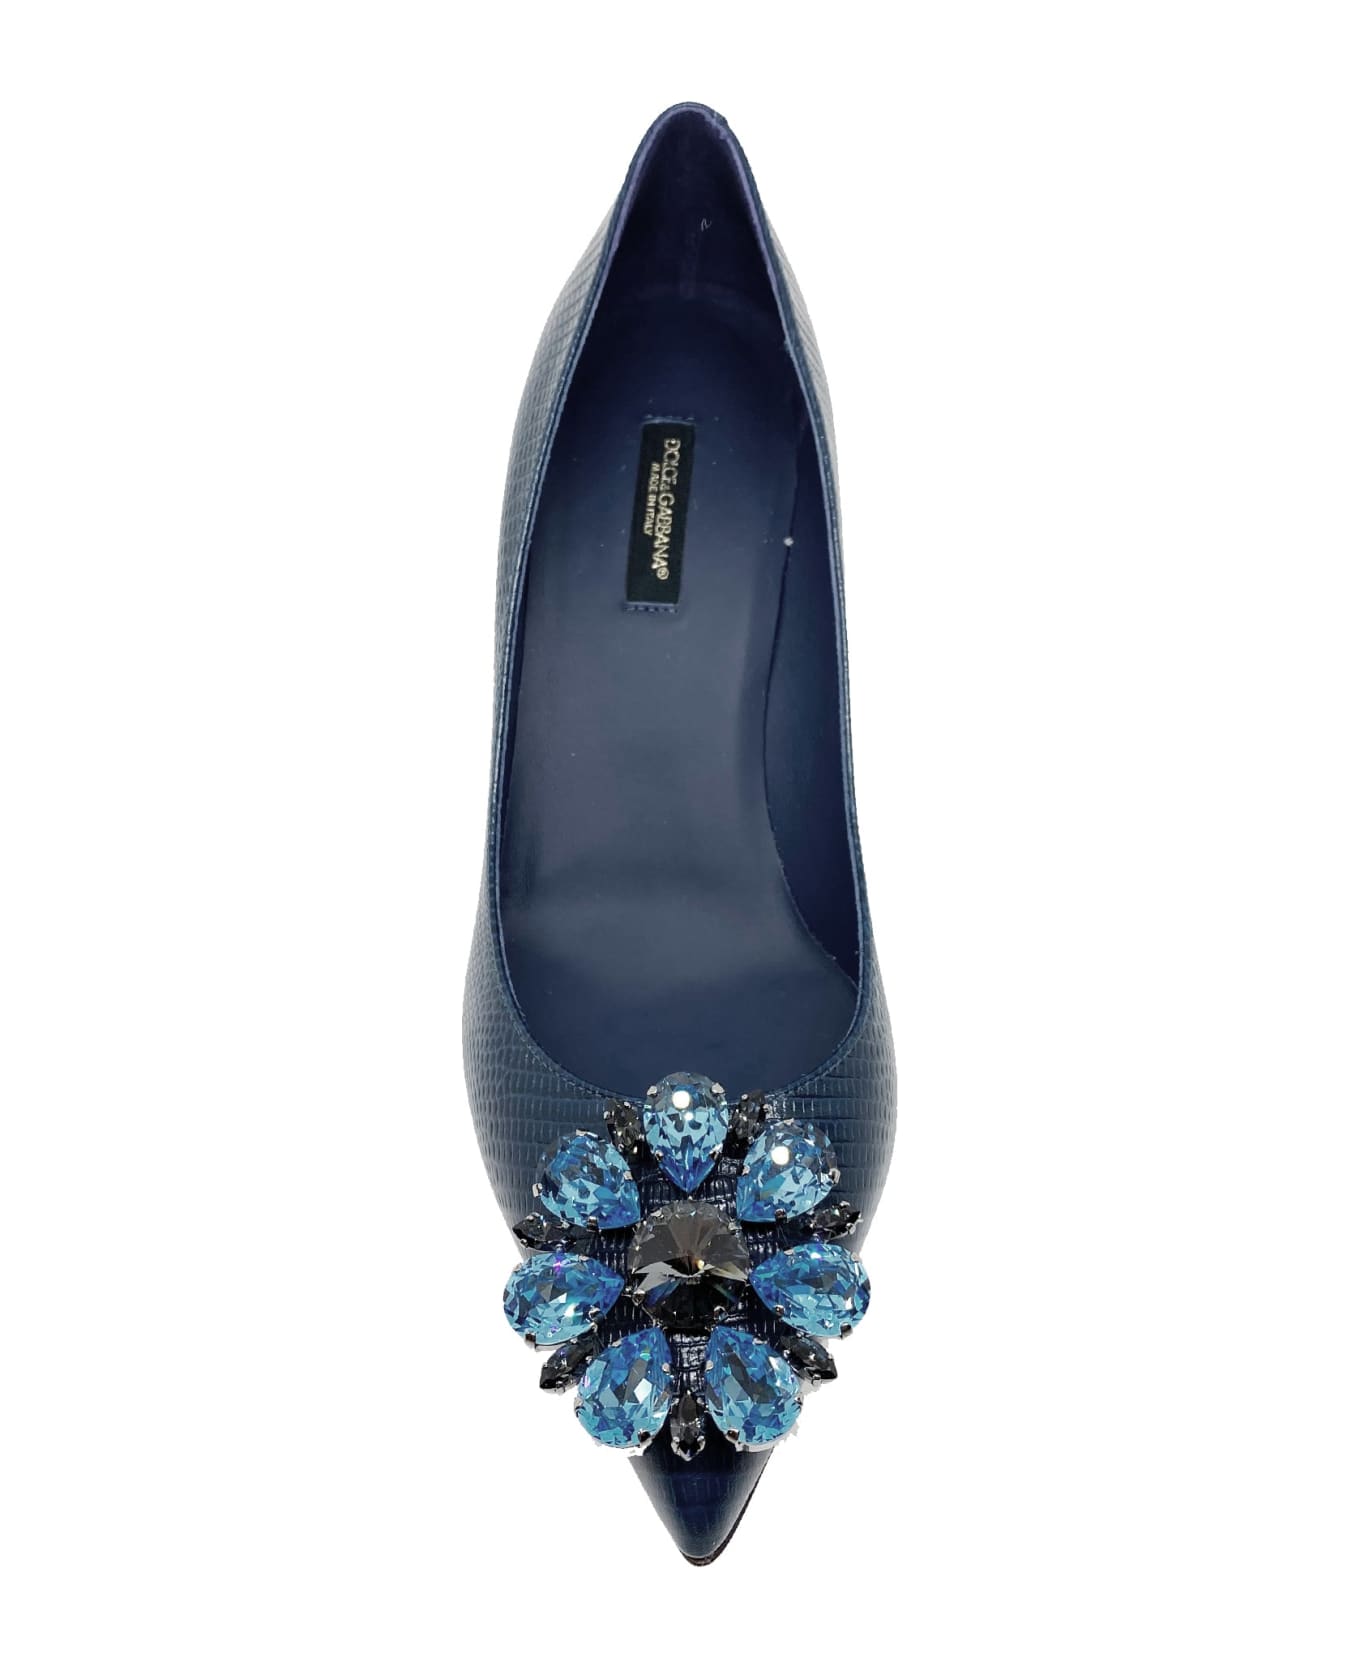 Dolce & Gabbana Crystal Embellished Pumps - Blue